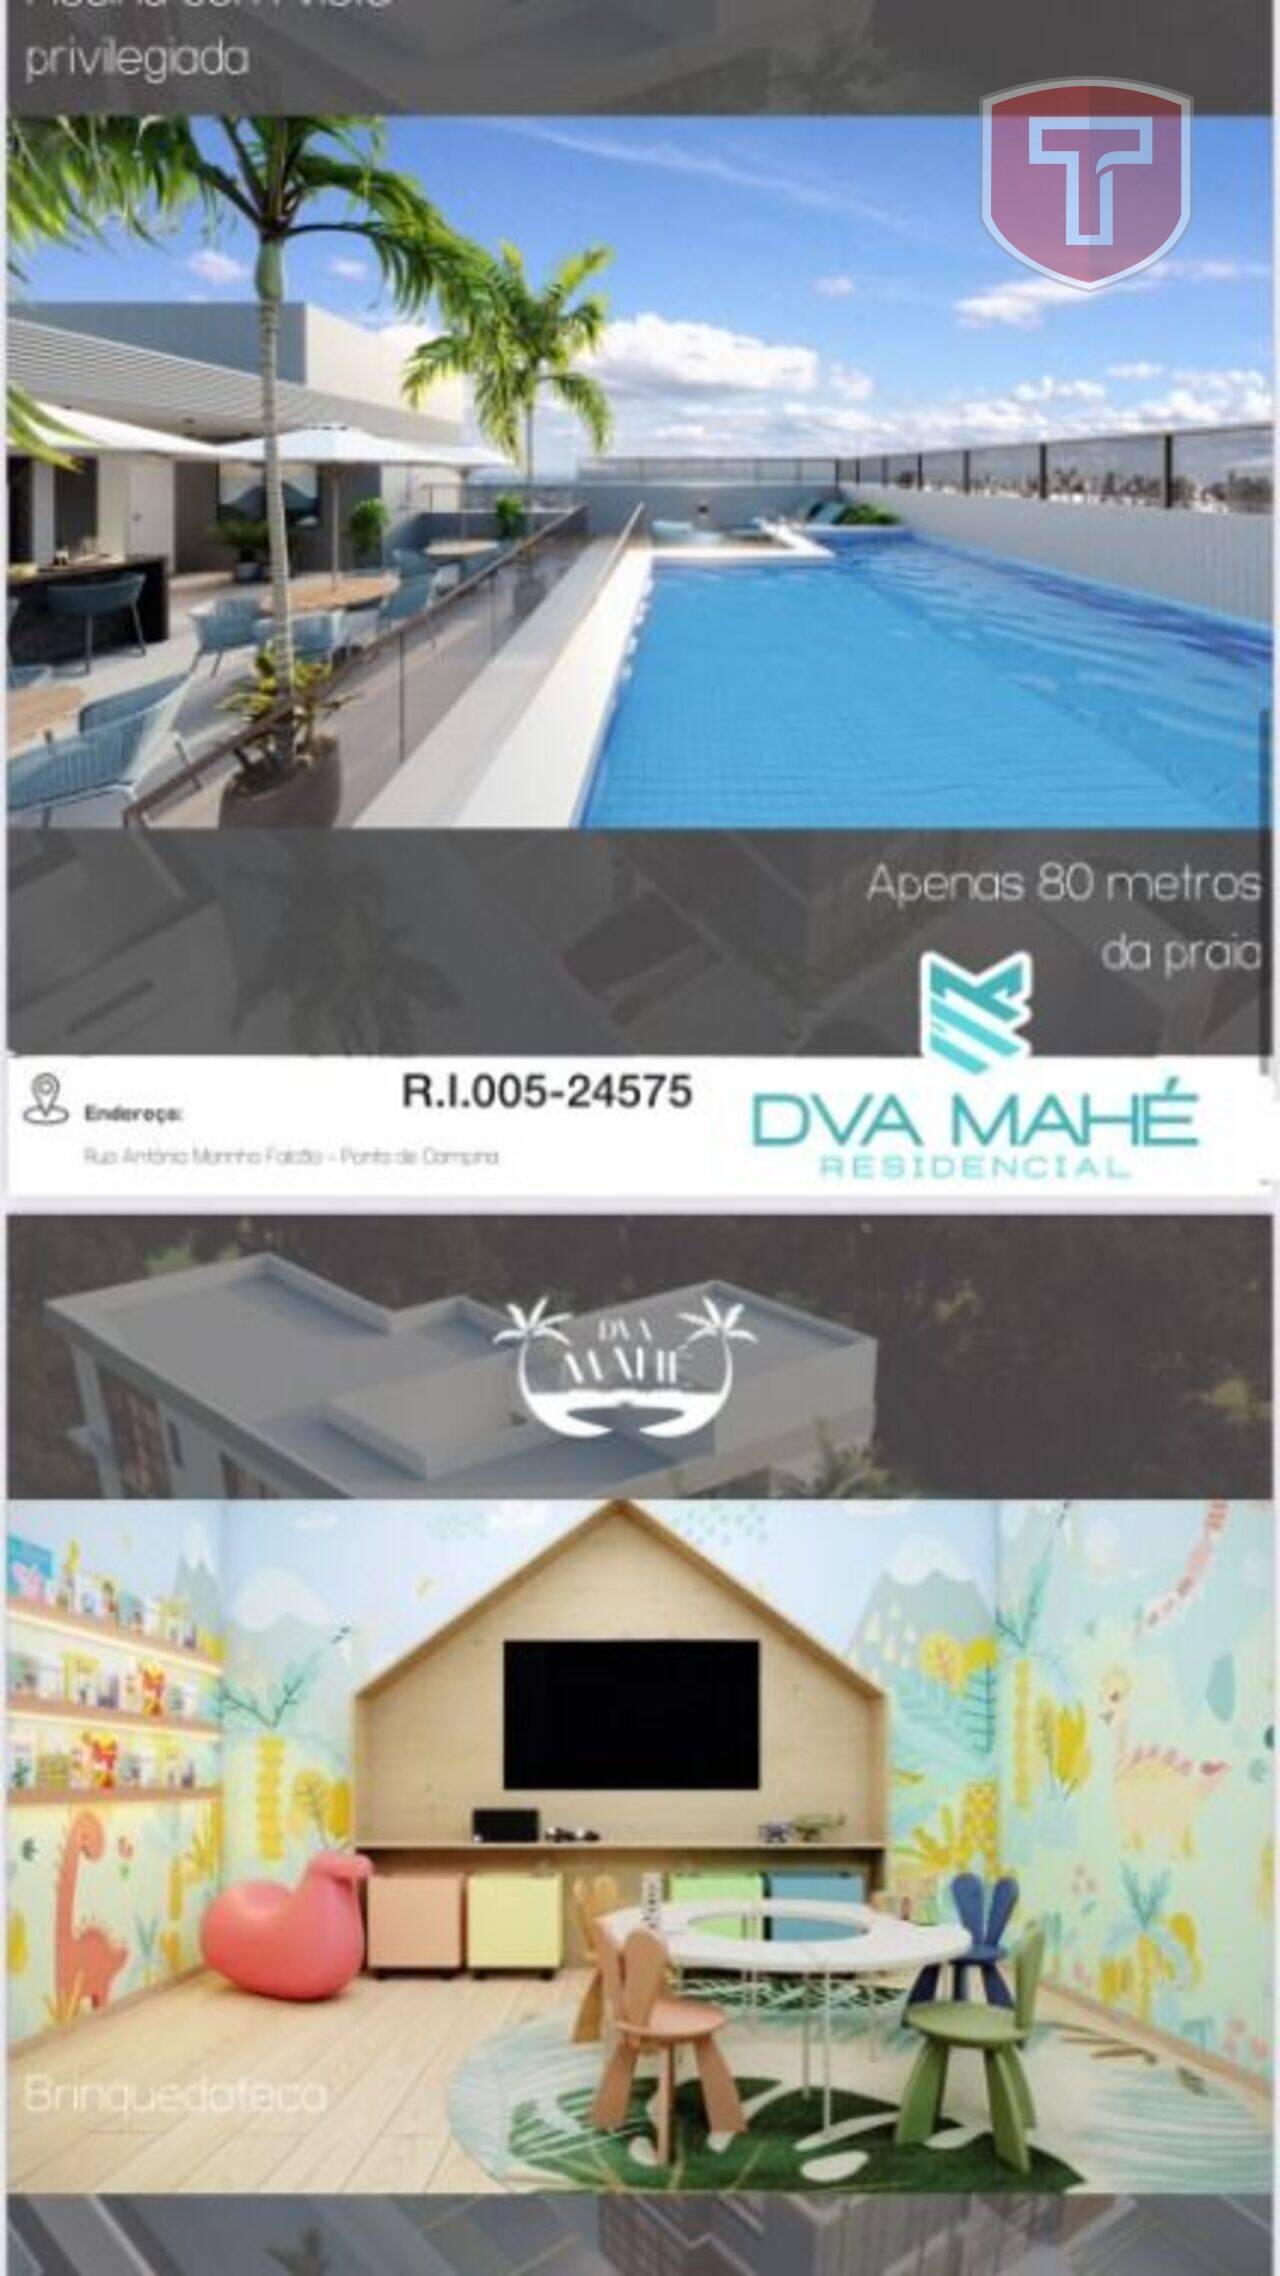 DVA Mahé - Apartamento 2 quartos à venda - Ponta de Campina, Cabedelo/PB